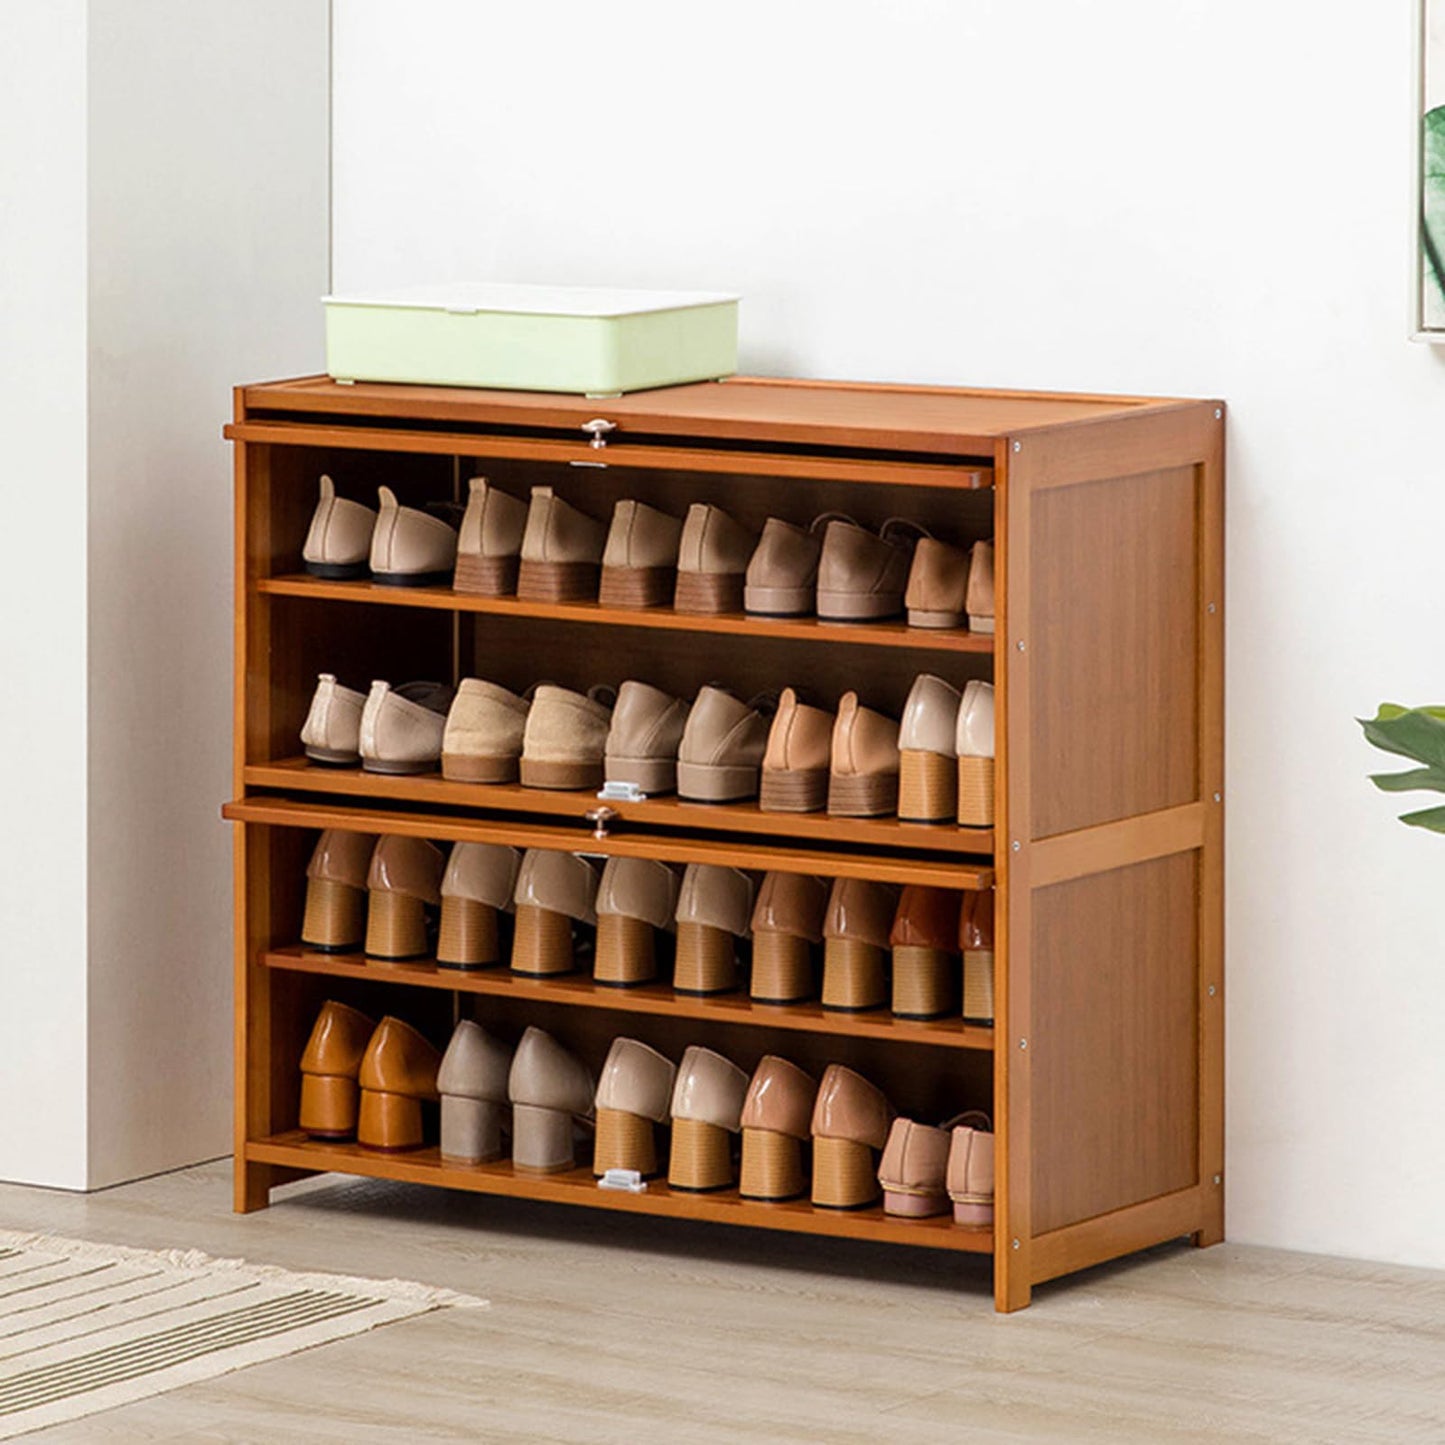 ILWorkTLs 4-Tier Bamboo Shoe Cabinet, Shoe Shelf Storage Organizer with Flip Door for Entryway, Hallway and Closet